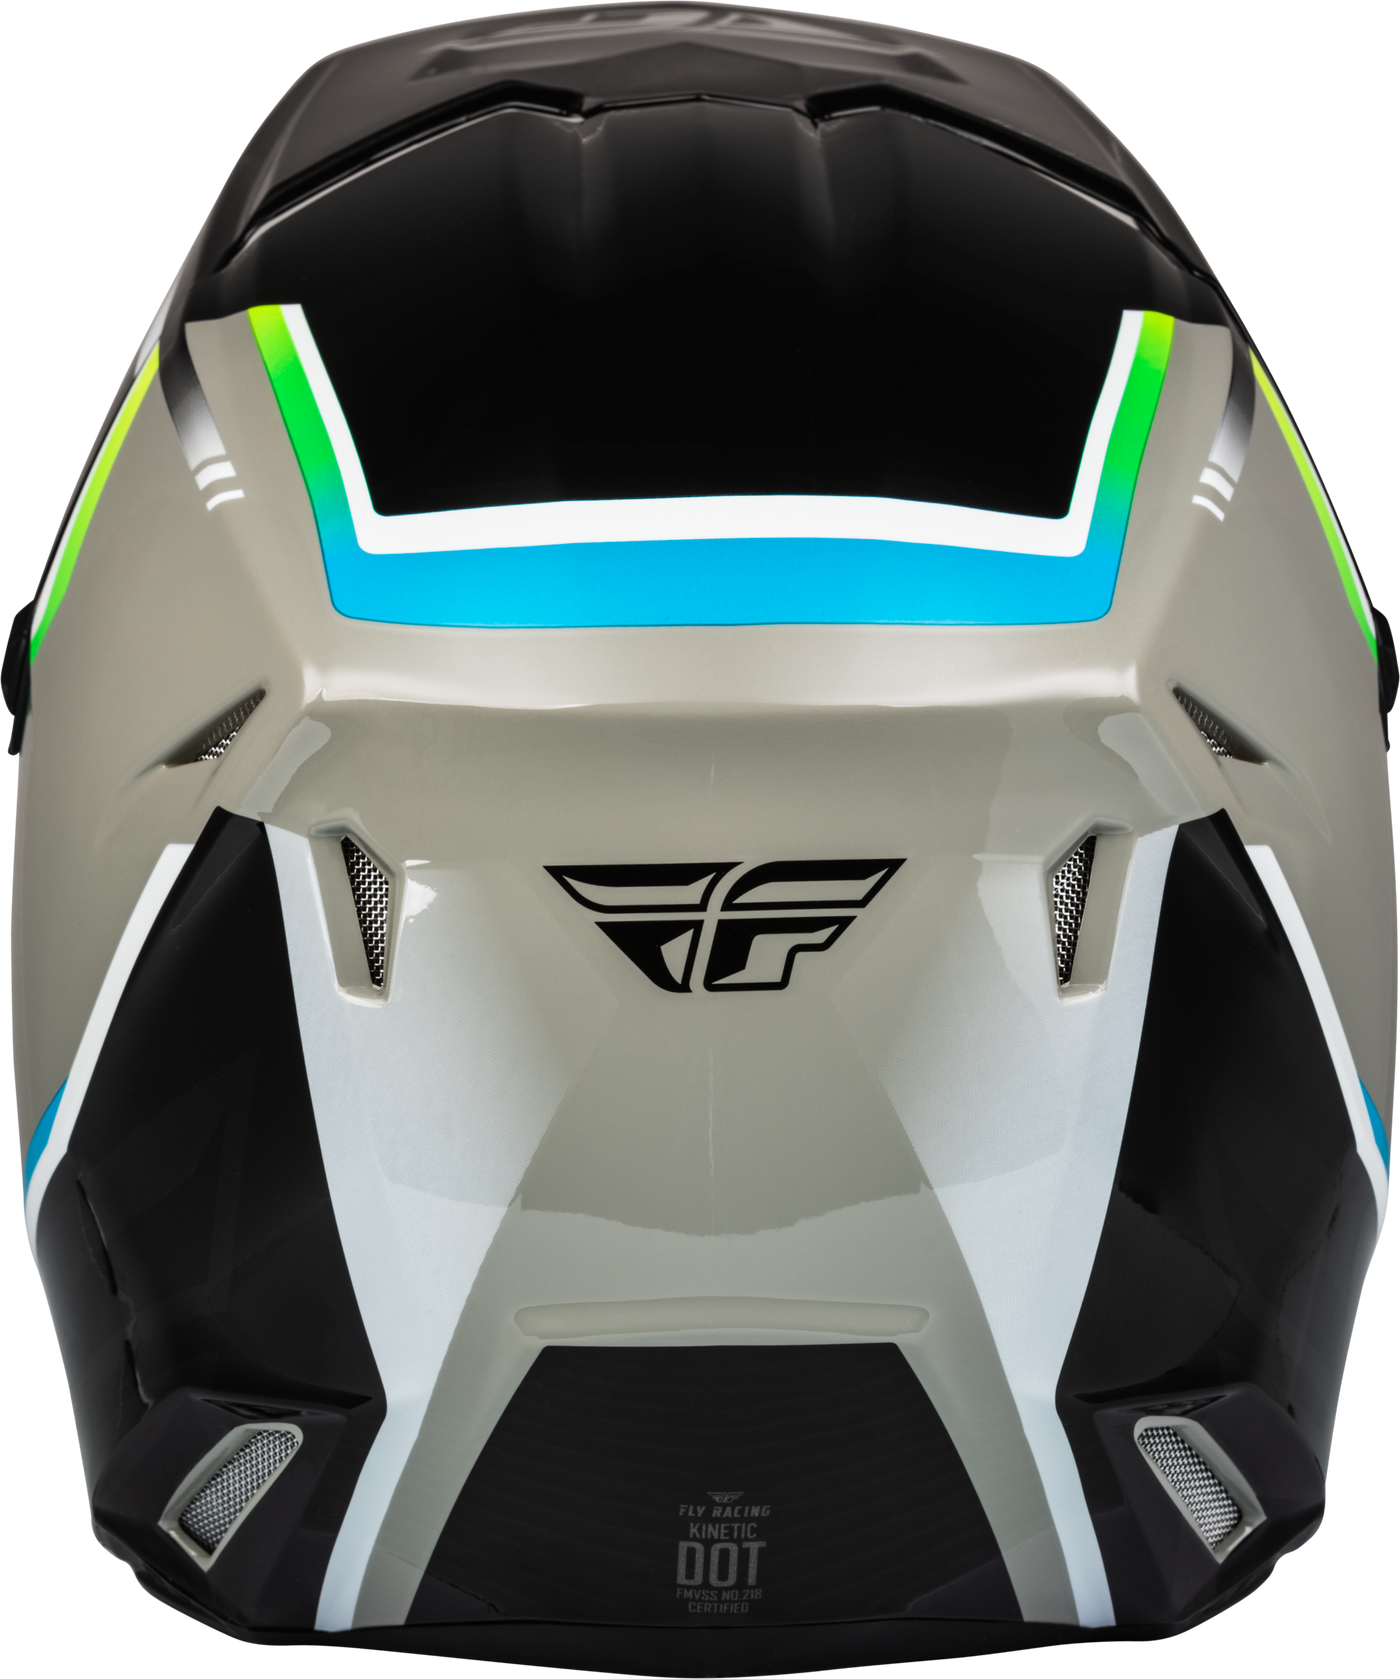 FLY Kinetic Vision Helmet